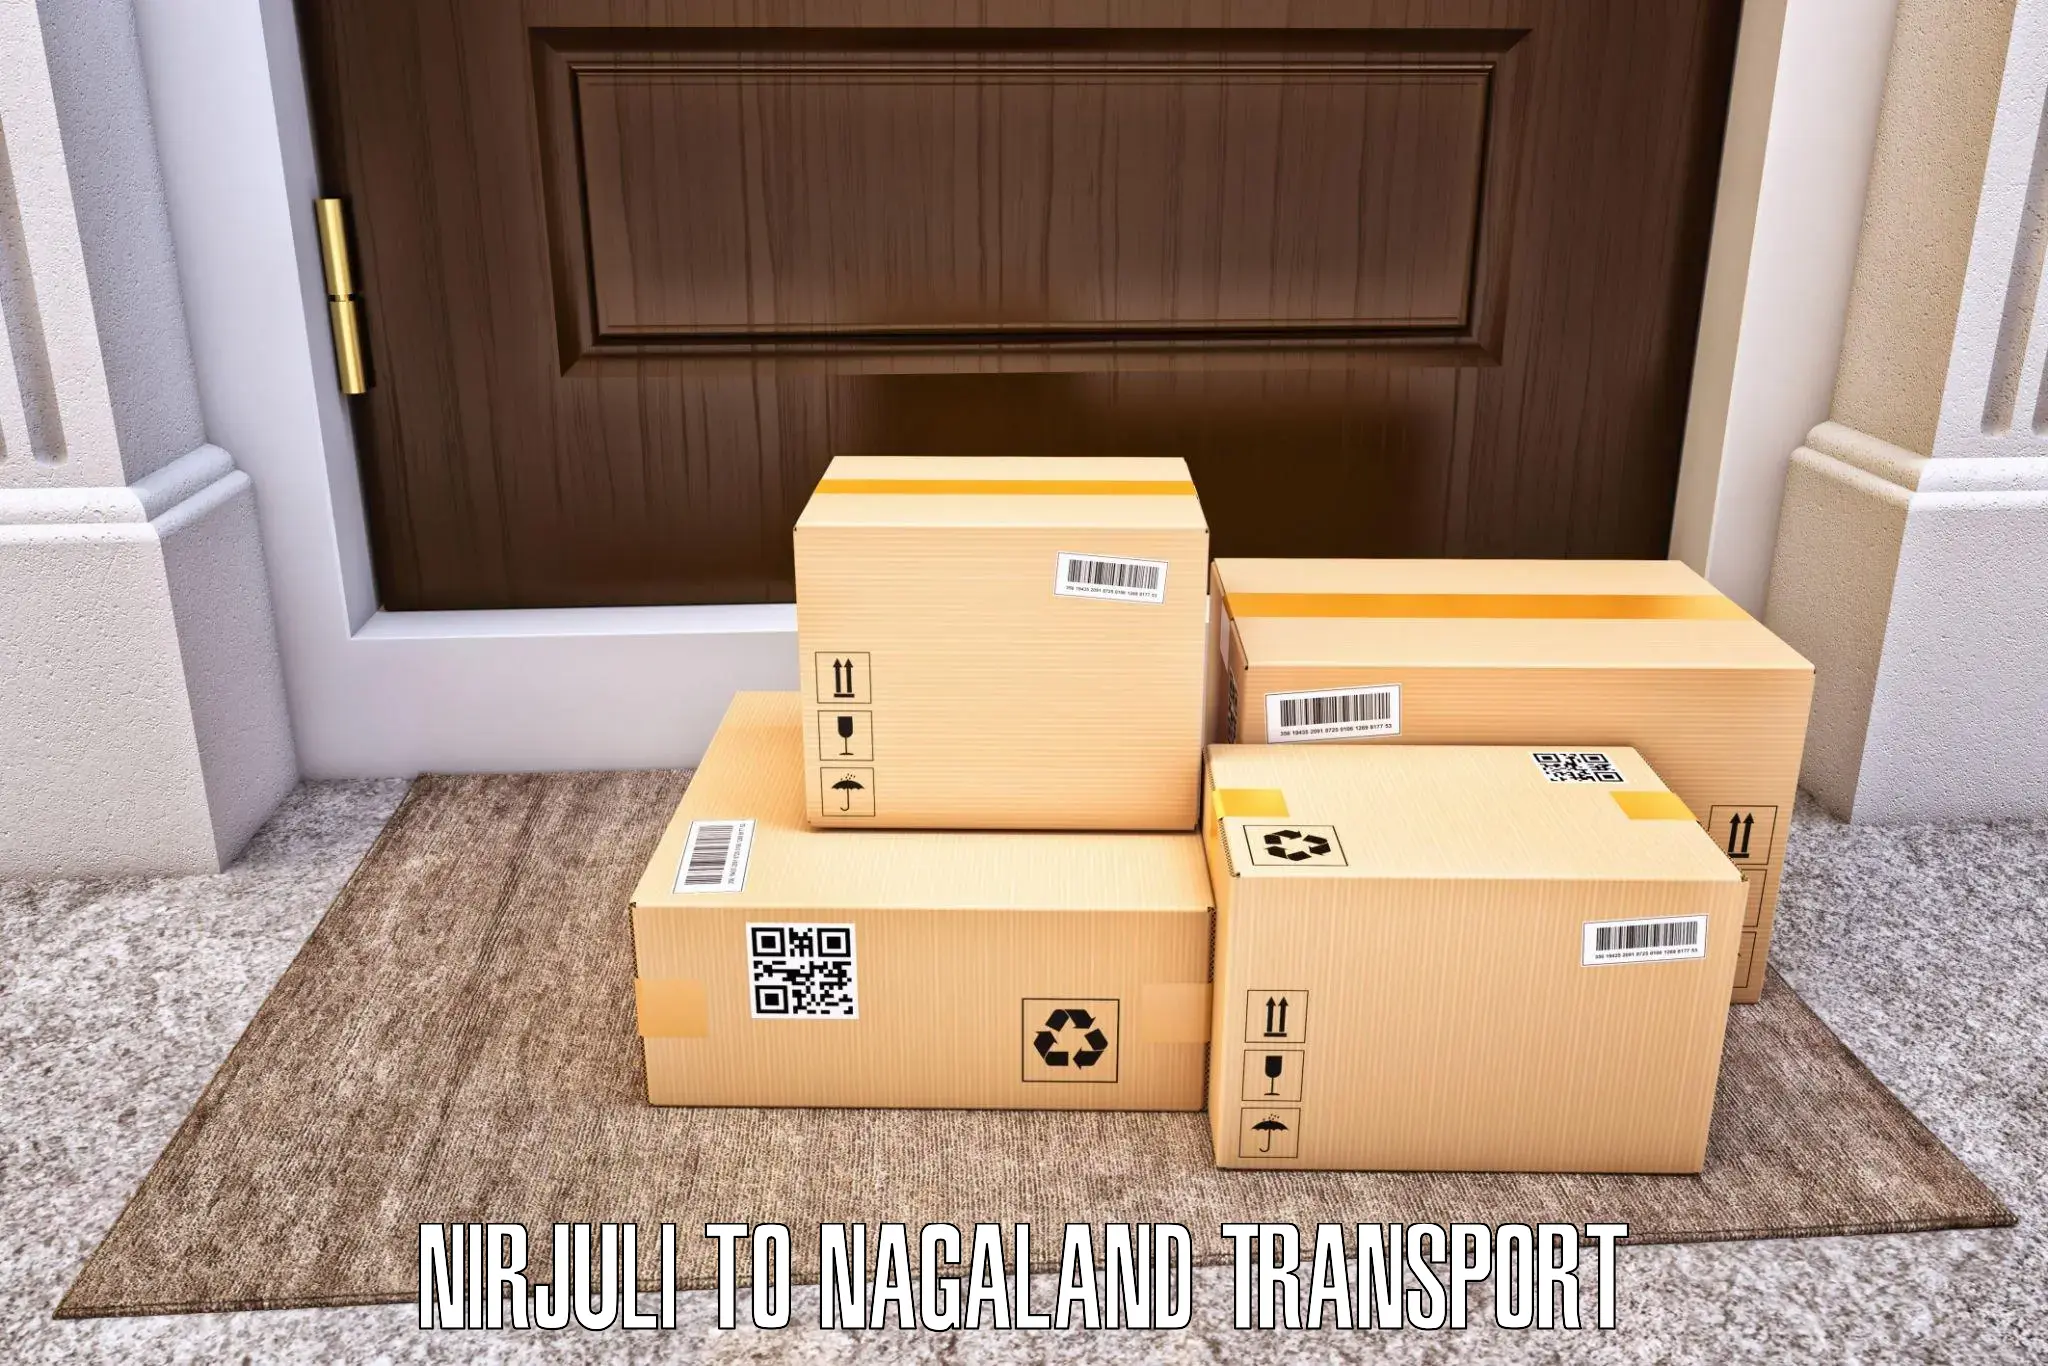 Online transport Nirjuli to Nagaland